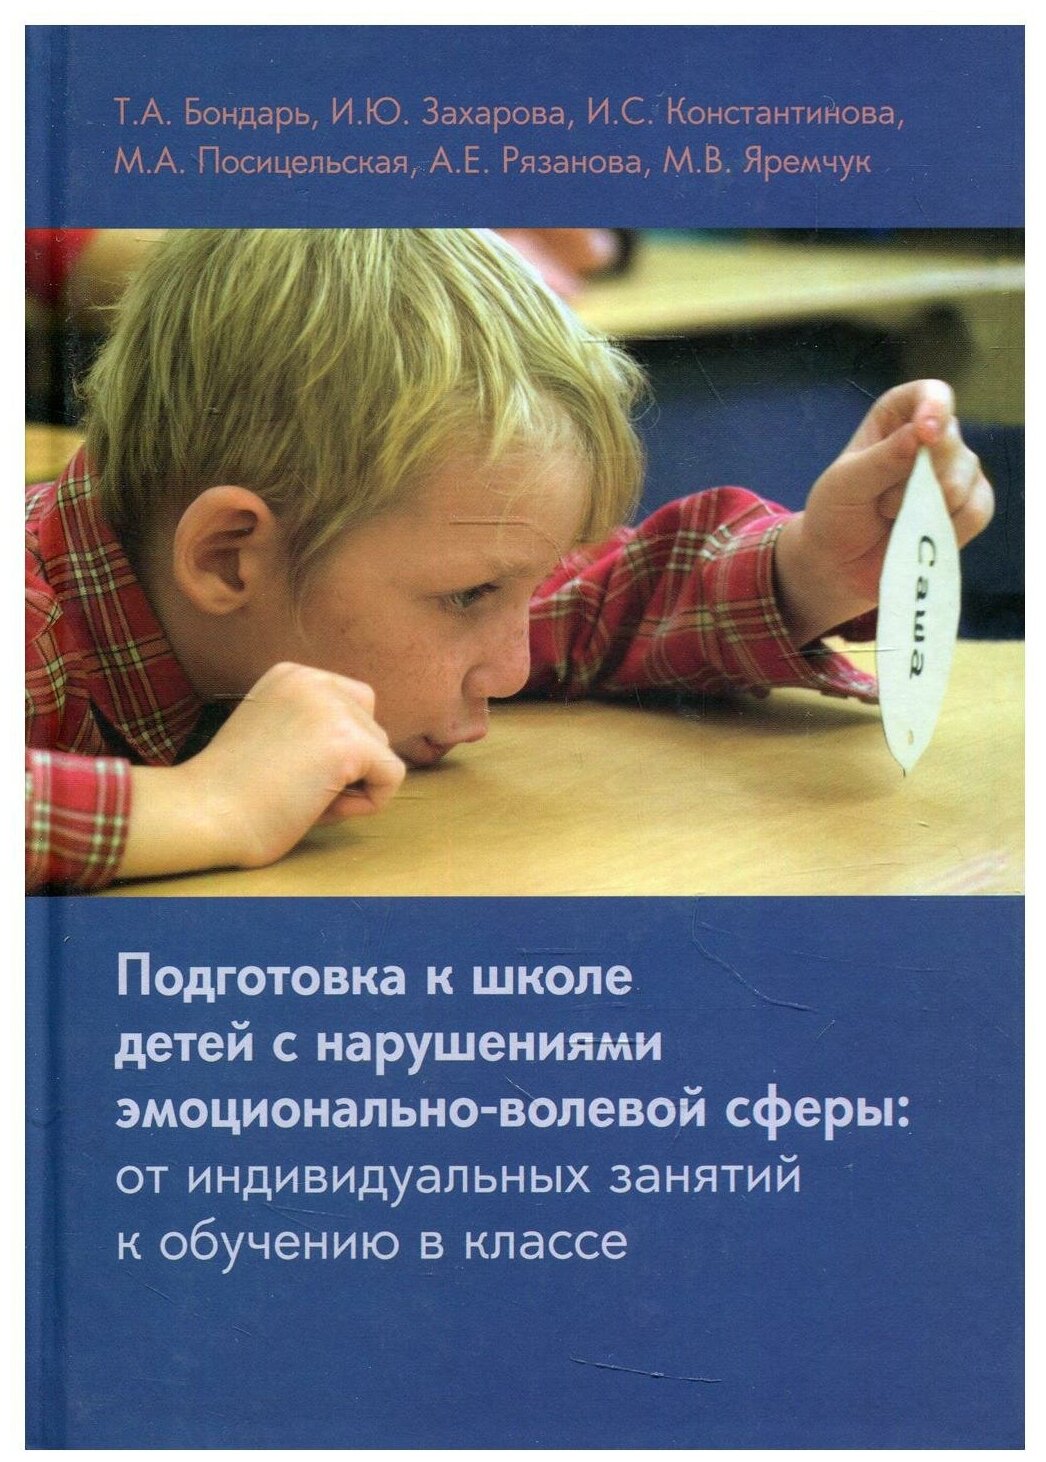 Книга Подготовка к школе детей с нарушениями эмоционально-волевой сферы: от индивидуаль... - фото №1